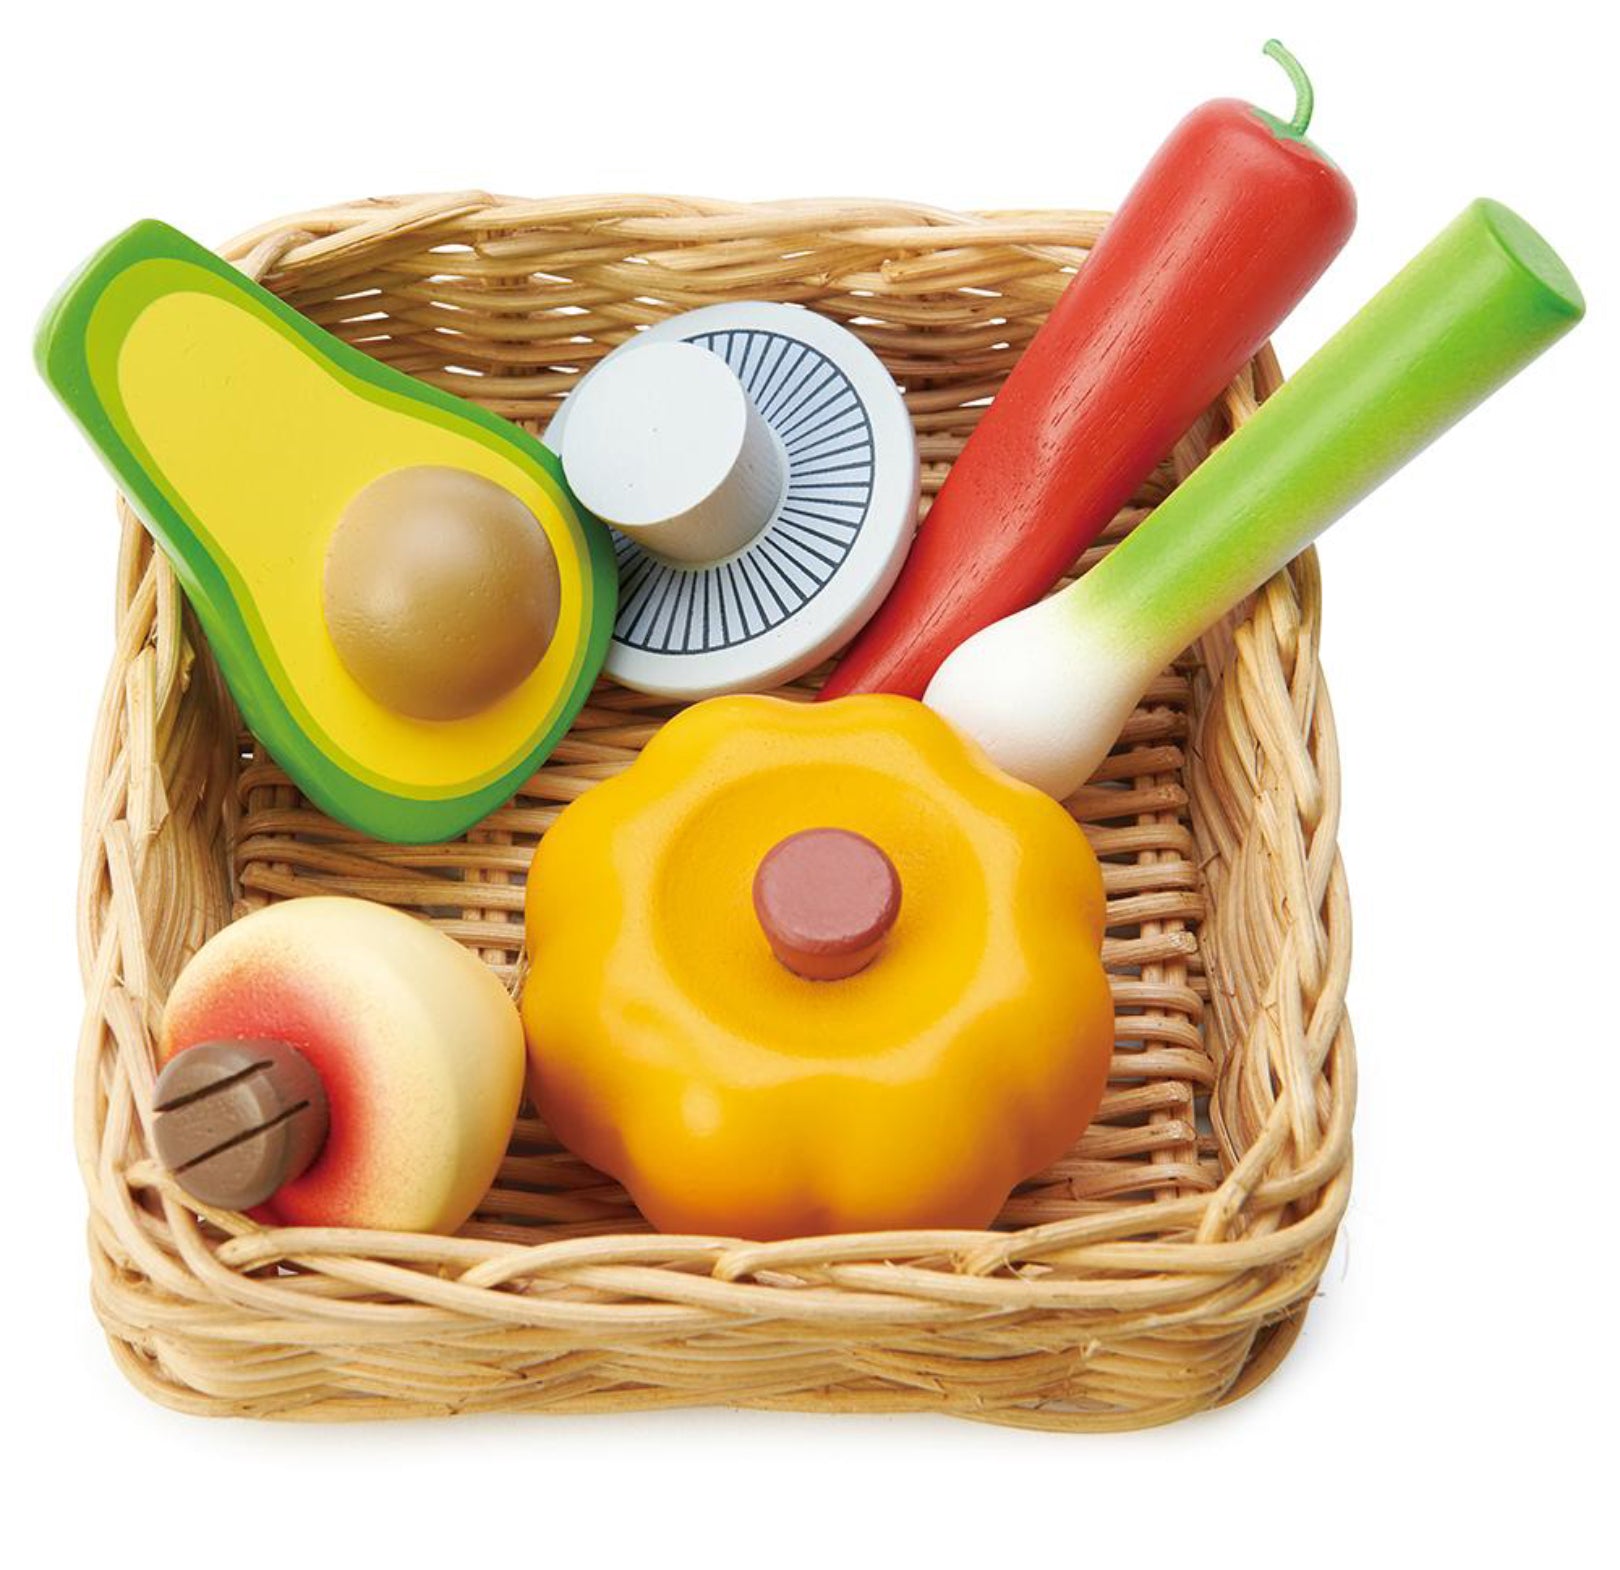 Tenderleaf Toys Wicker Basket & Wooden Veggies